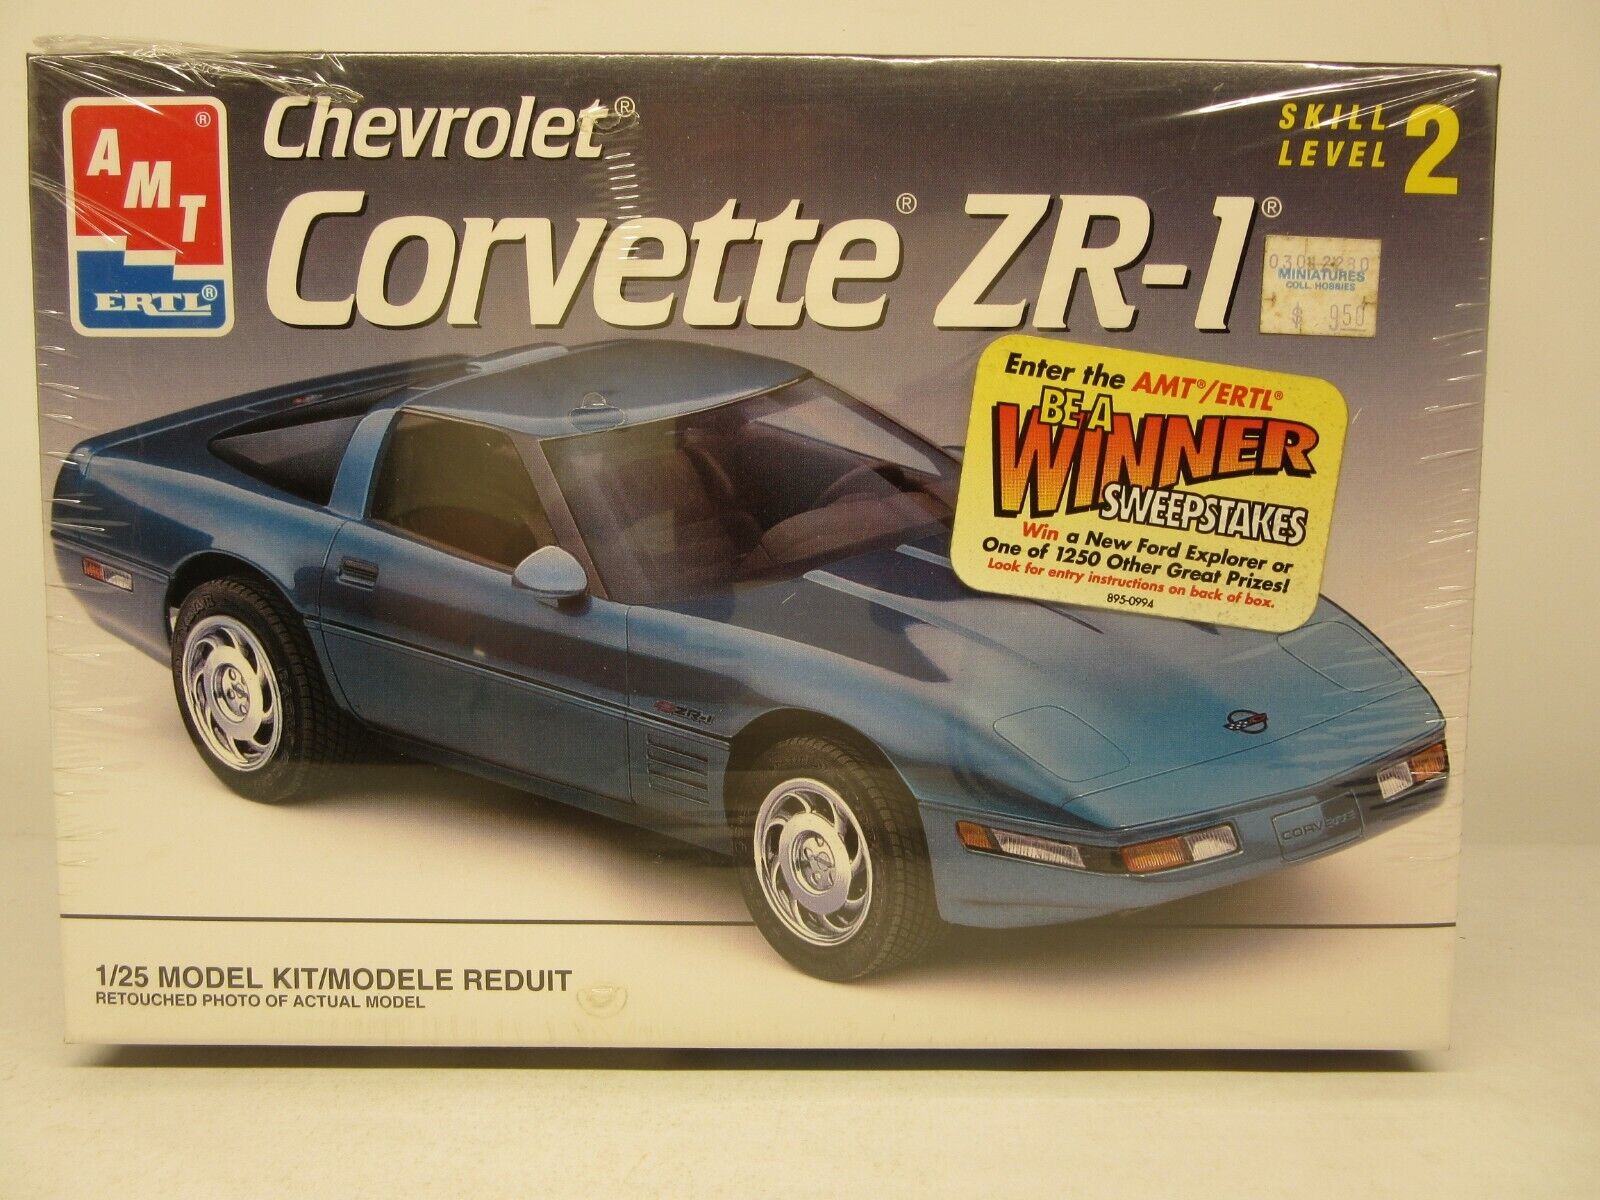 AMT ERTL 1:25 '93 Chevrolet Corvette ZR-1 Model Kit #8609 ©1992 NOS SEALED!